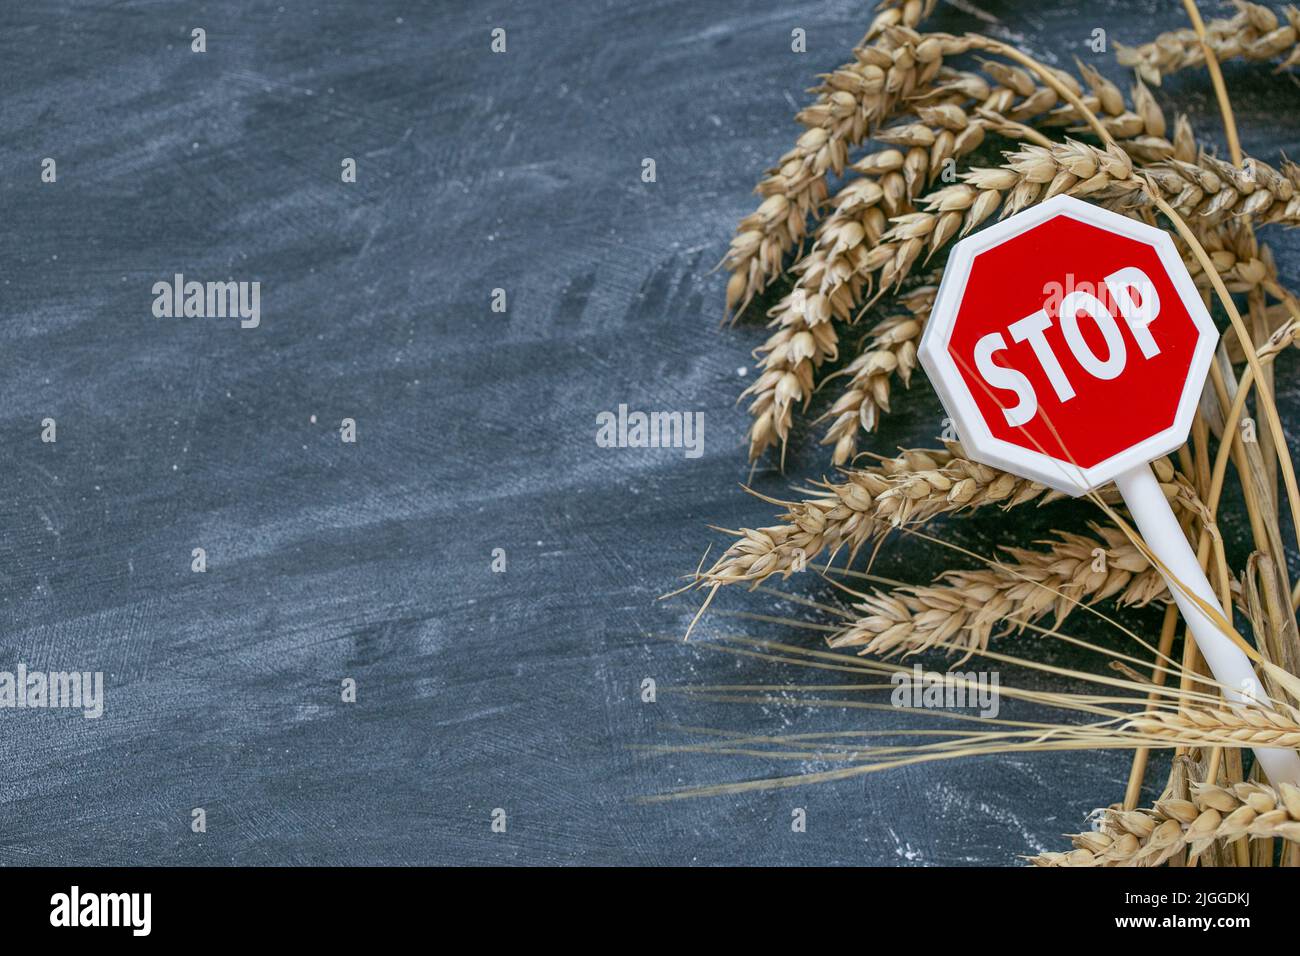 Weizenimport- und Exportverbot.steigende Preise für Weizen- und Mehlprodukte.Stoppen Sie auf den Import und Export von Weizen.Weizenohren und Stop-Zeichen.Lebensmittelkrise Stockfoto